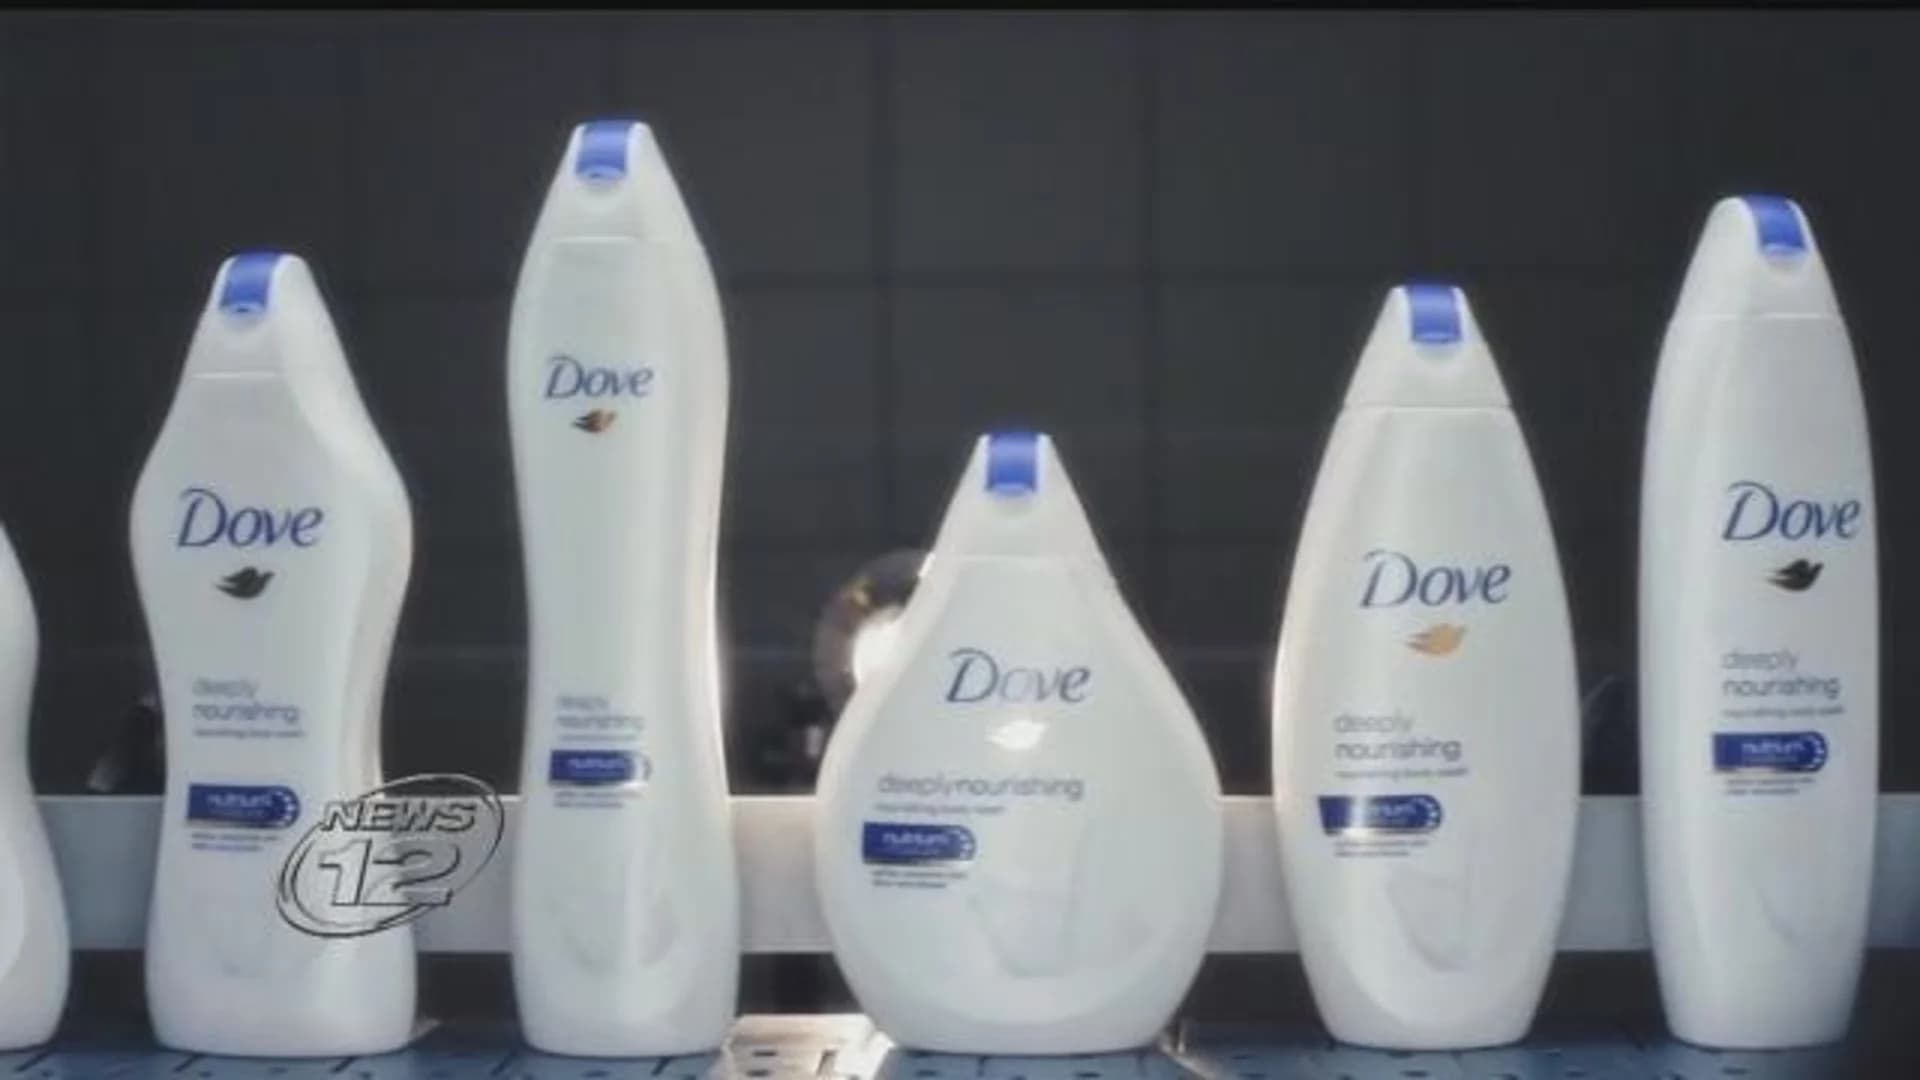 Dove ad campaign criticized online